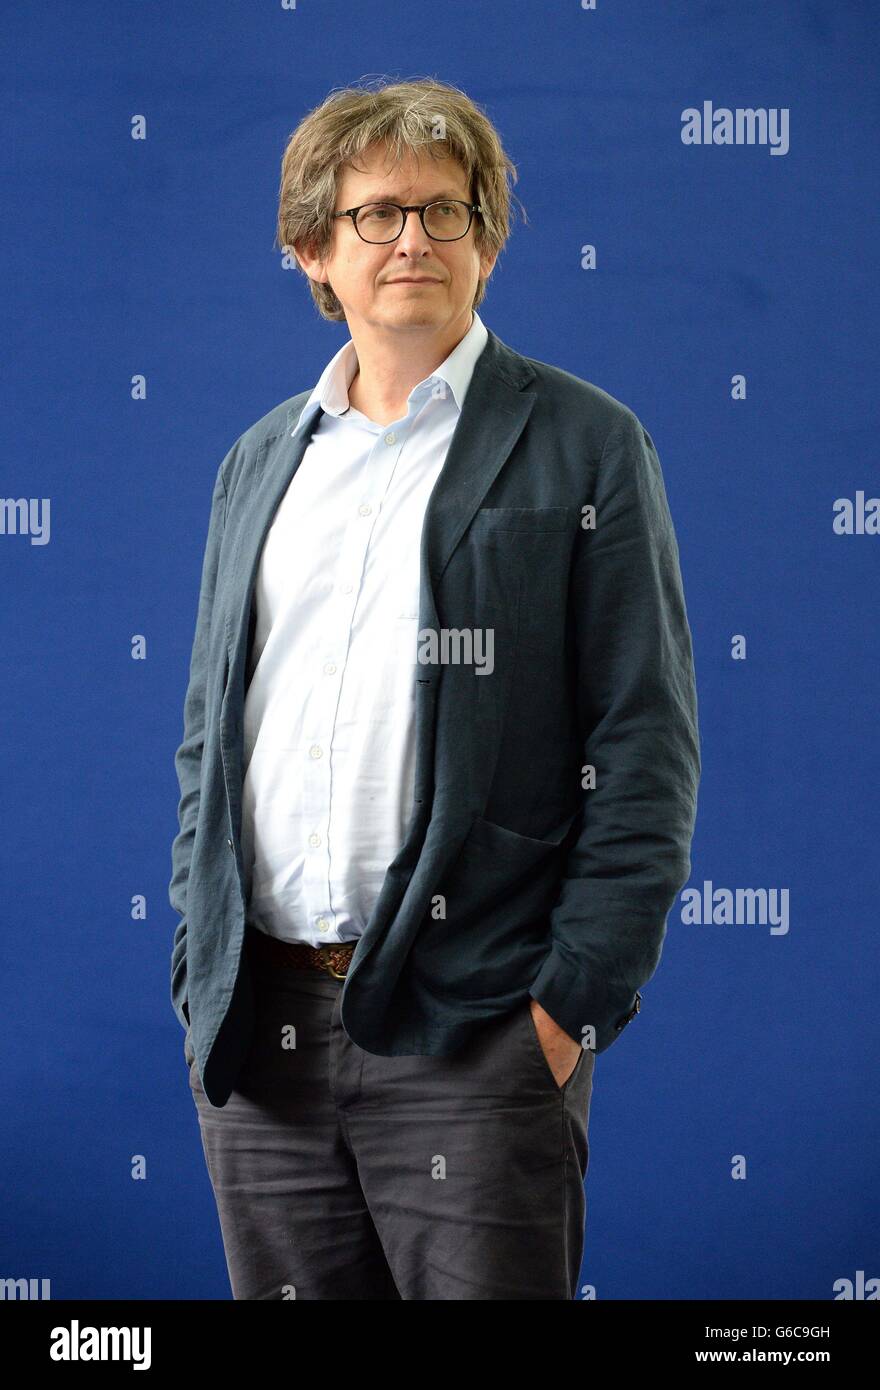 Alan Rusbridger, rédacteur en chef du Guardian, au Festival international du livre d'Édimbourg. Banque D'Images